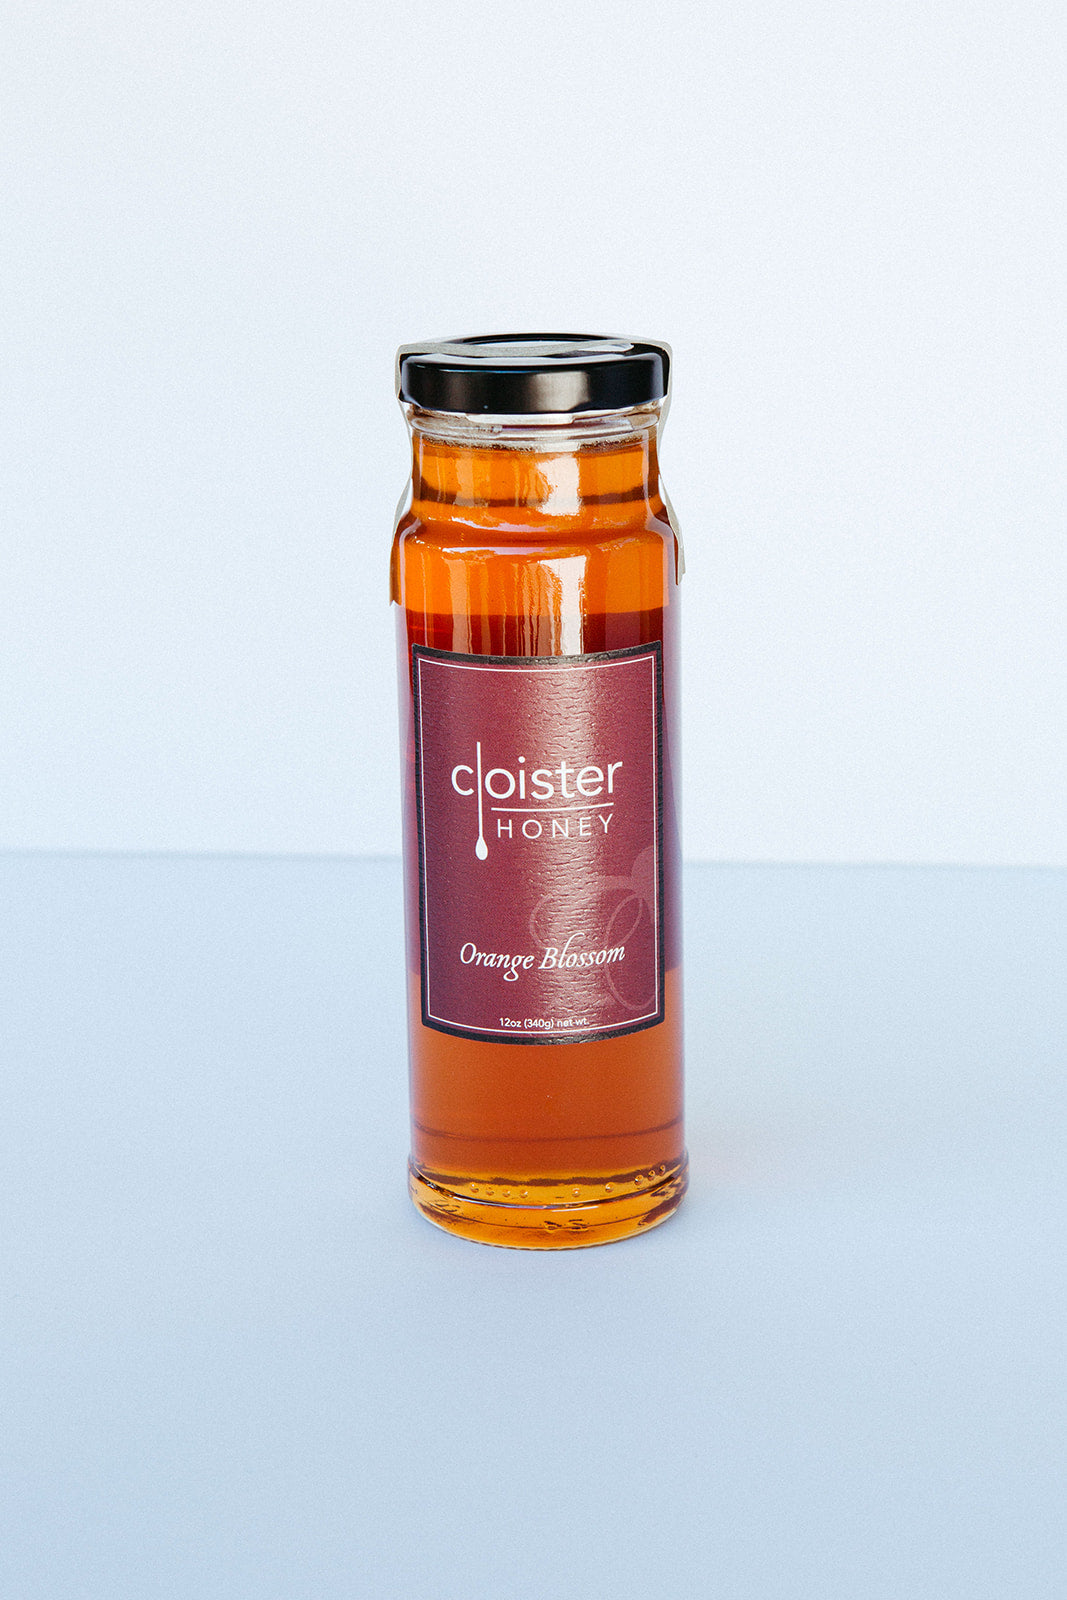 Cloister Orange Blossom Honey - 12 oz